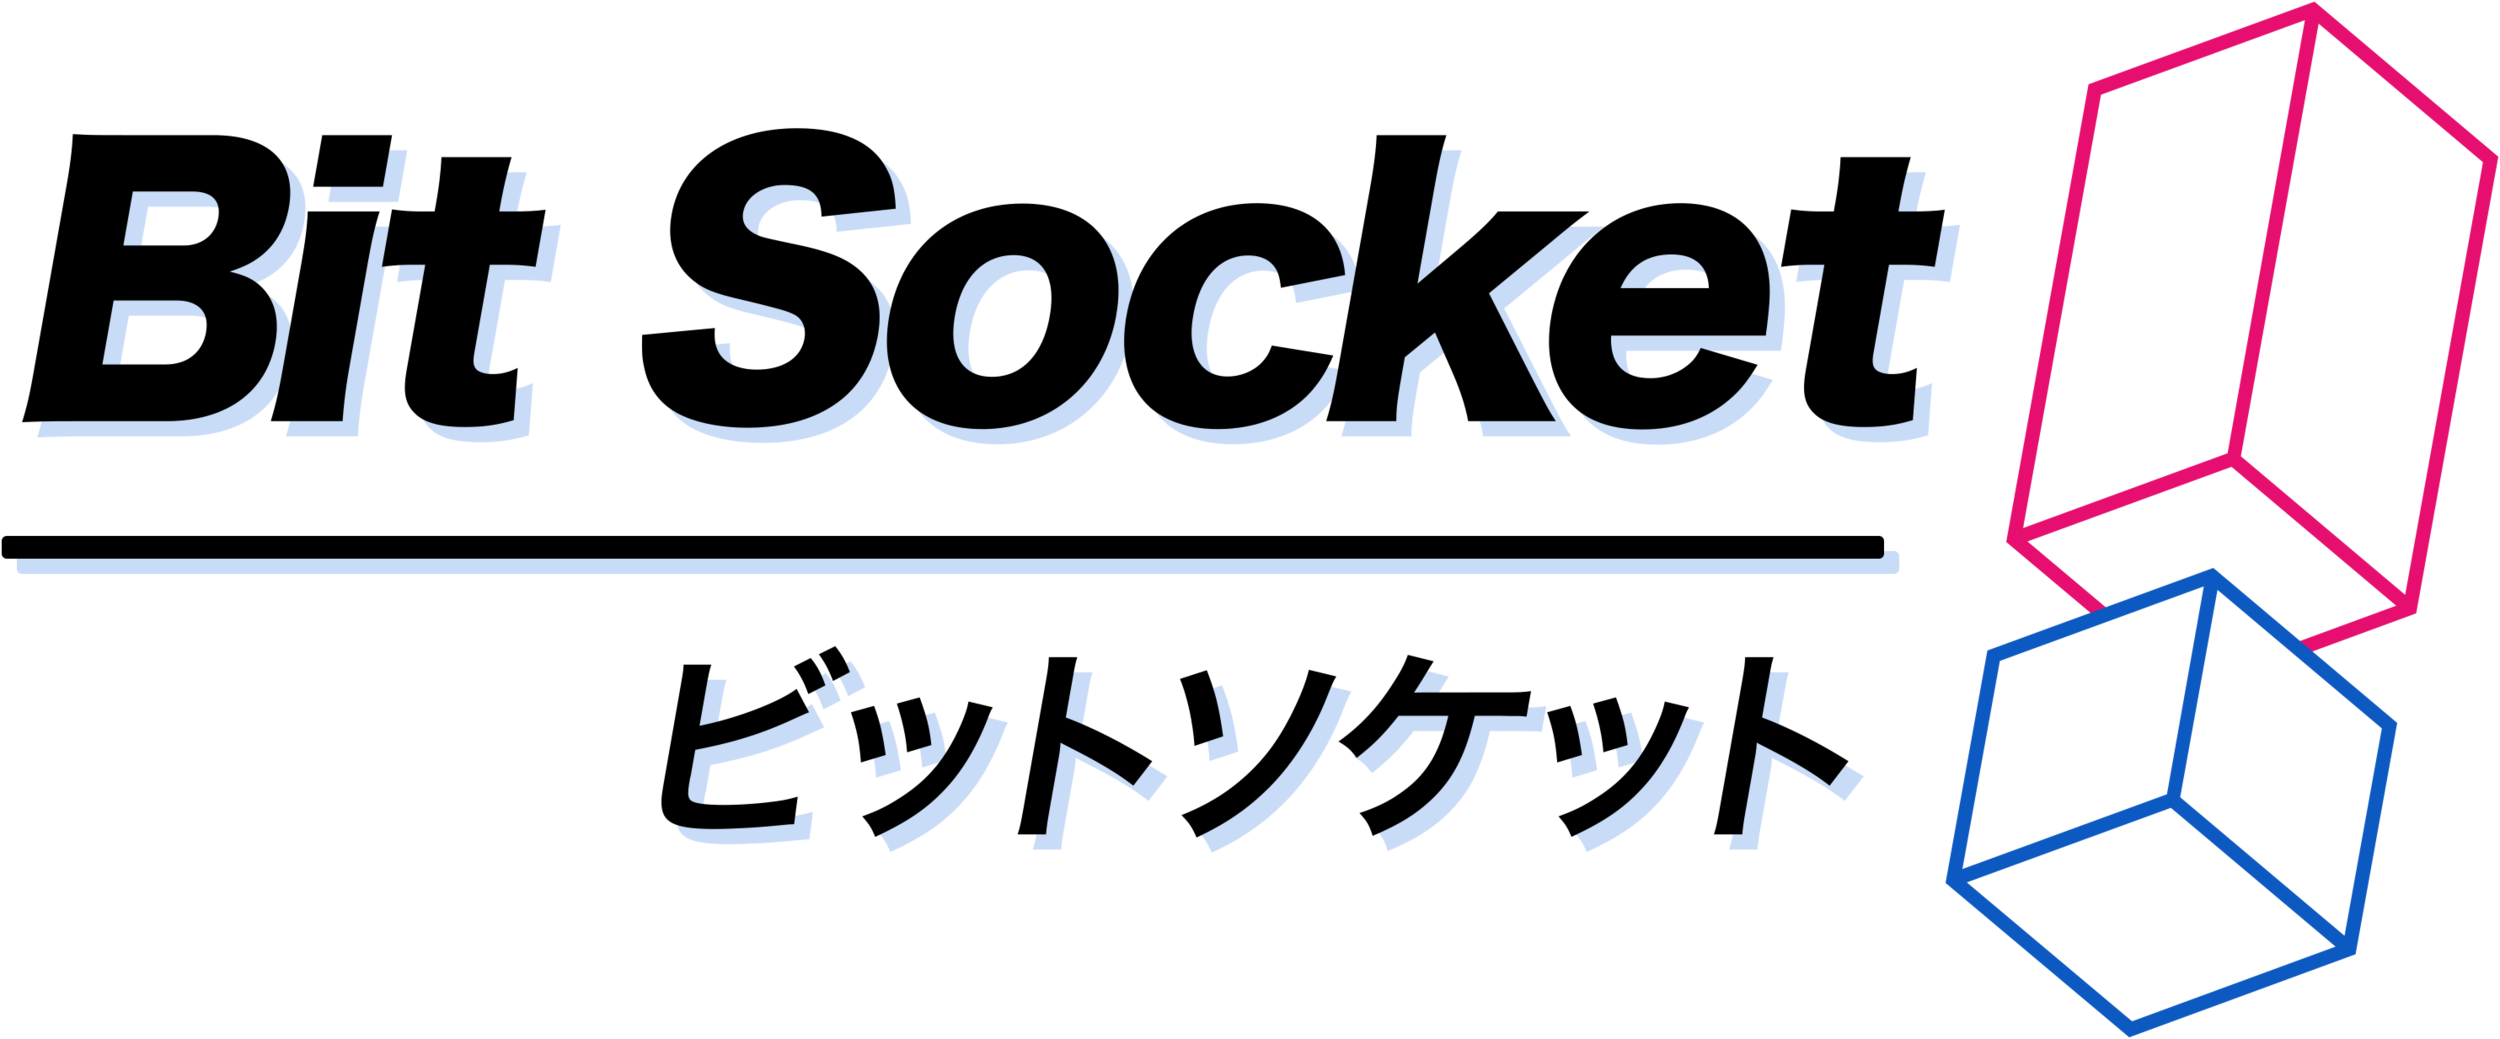 Bit Socket